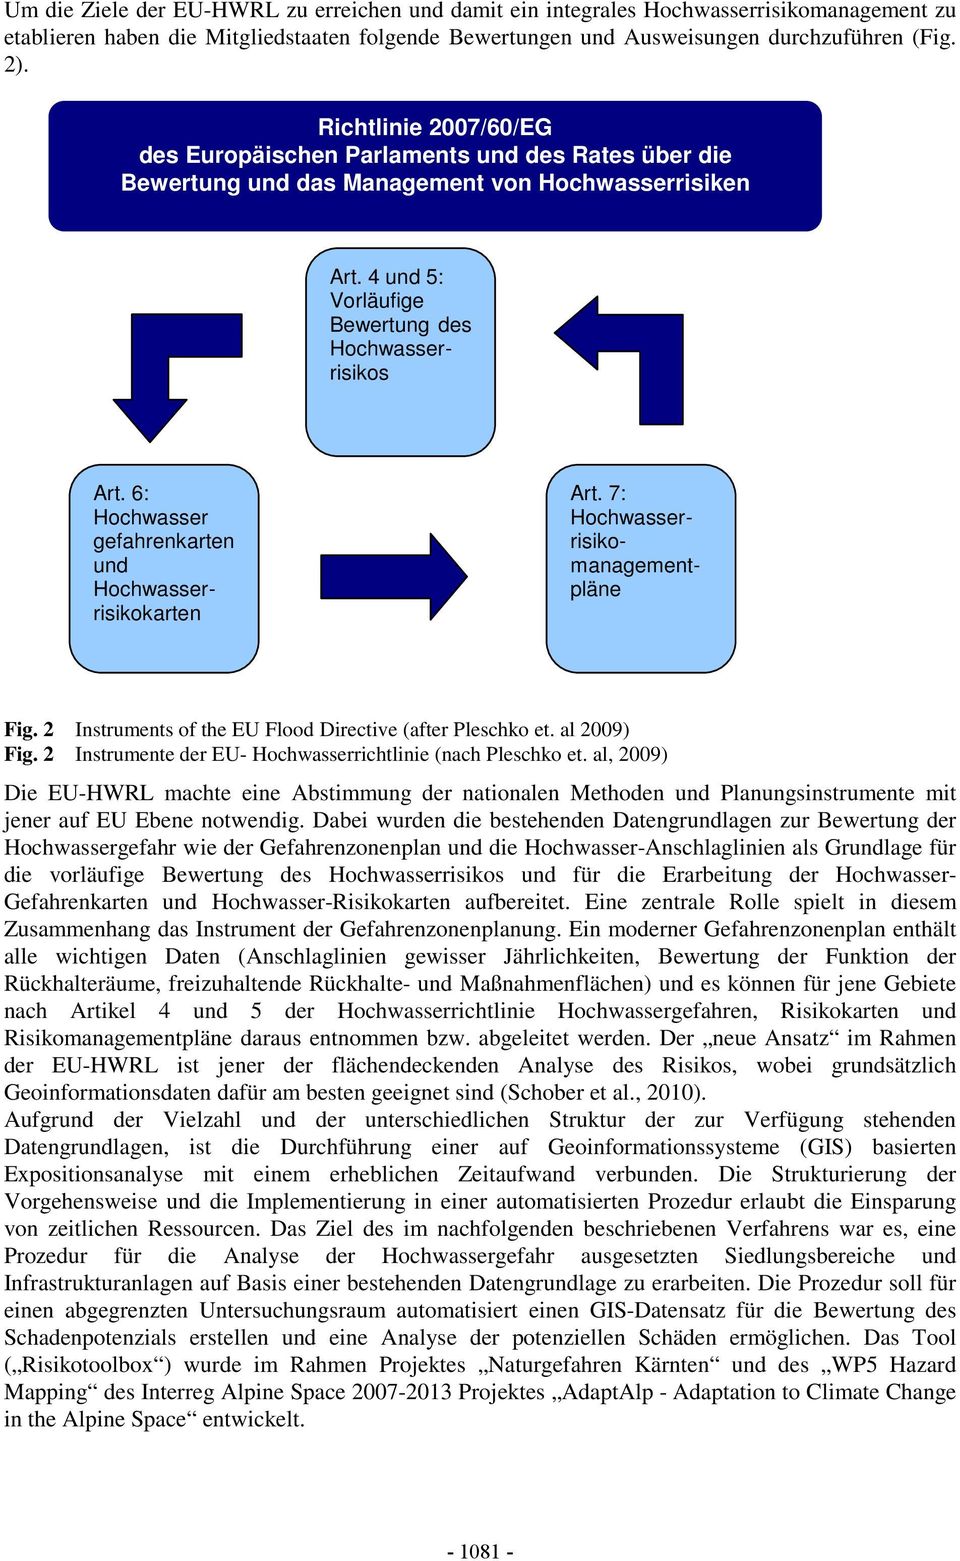 6: Hochwasser gefahrenkarten und Hochwasserrisikokarten Art. 7: Hochwasserrisikomanagementpläne Fig. 2 Instruments of the EU Flood Directive (after Pleschko et. al 2009) Fig.